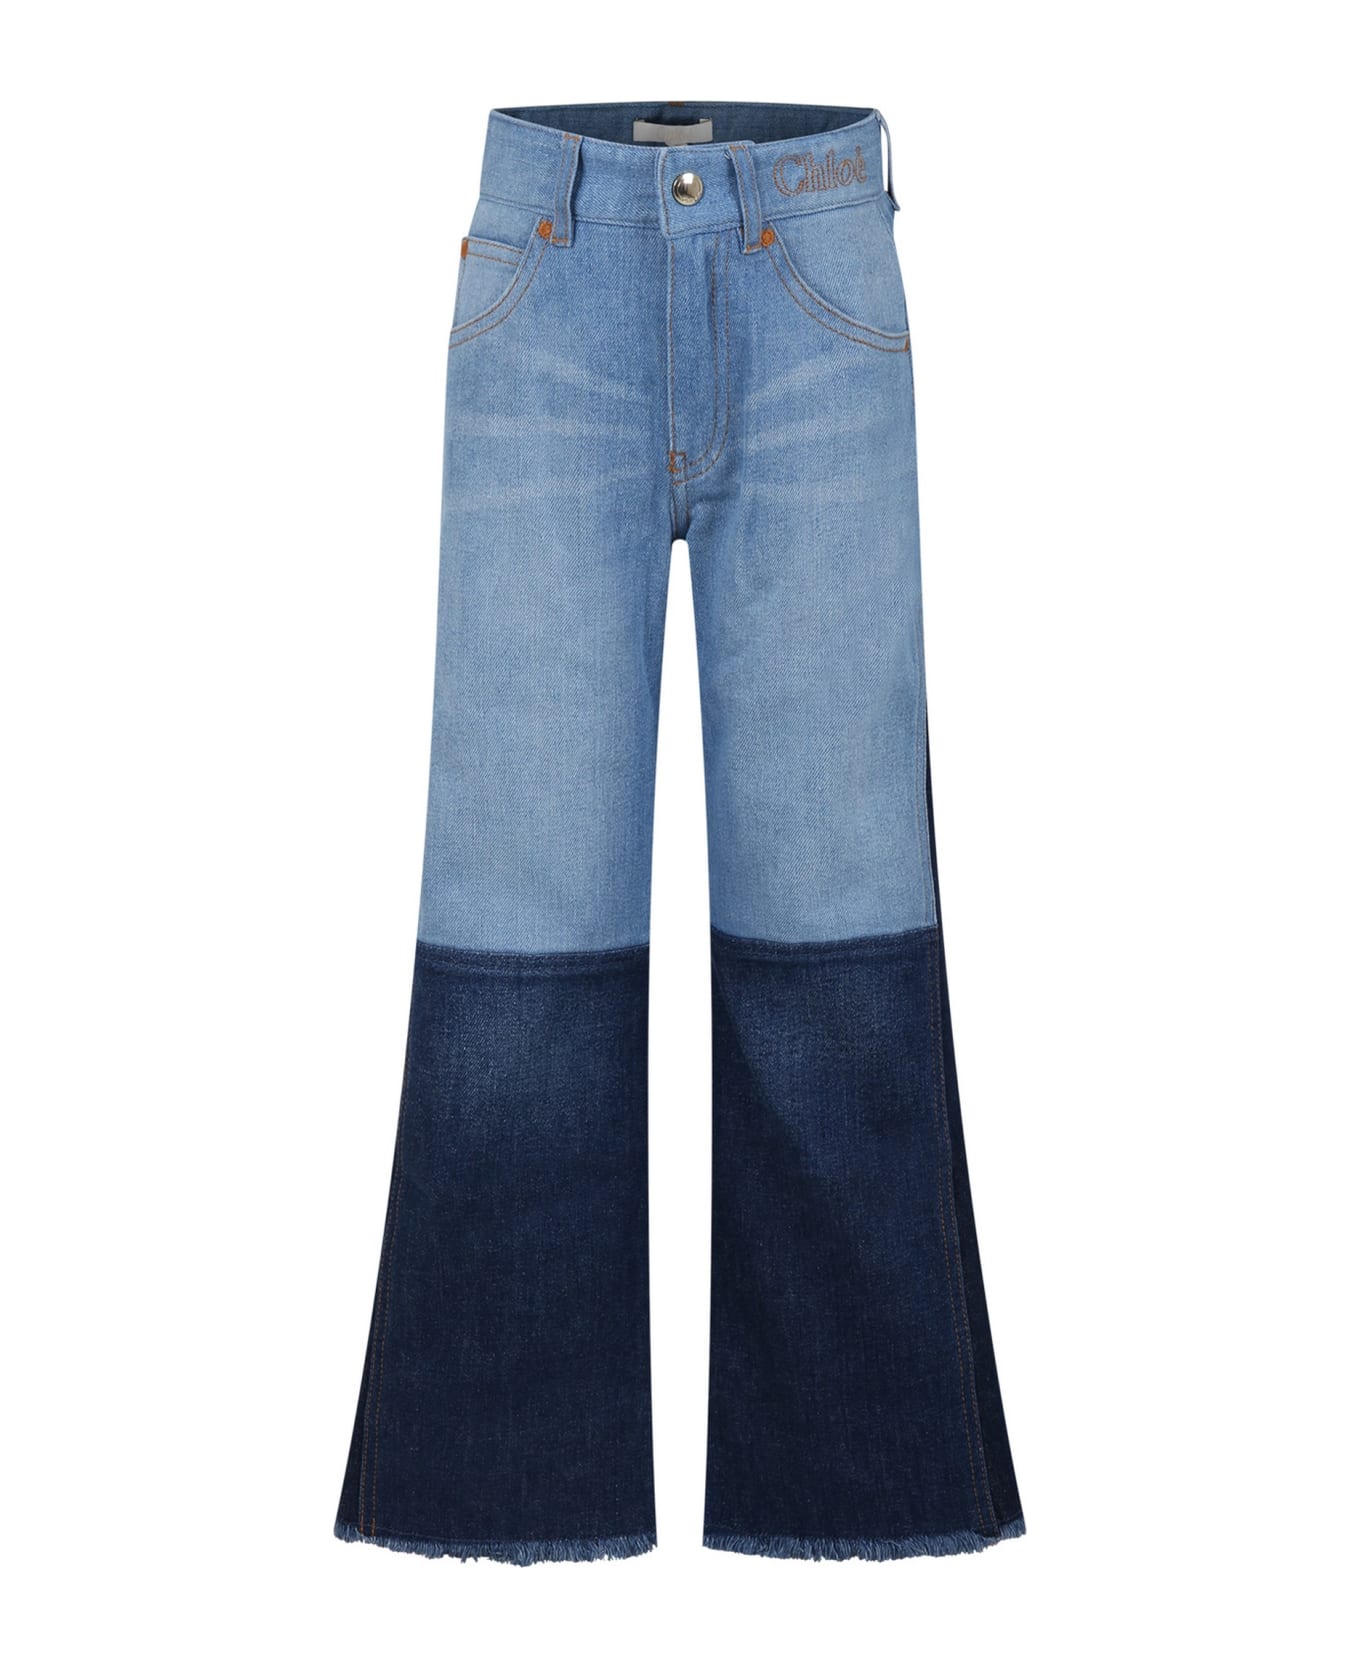 Chloé Light Blue Jeans For Girl With Logo - Denim